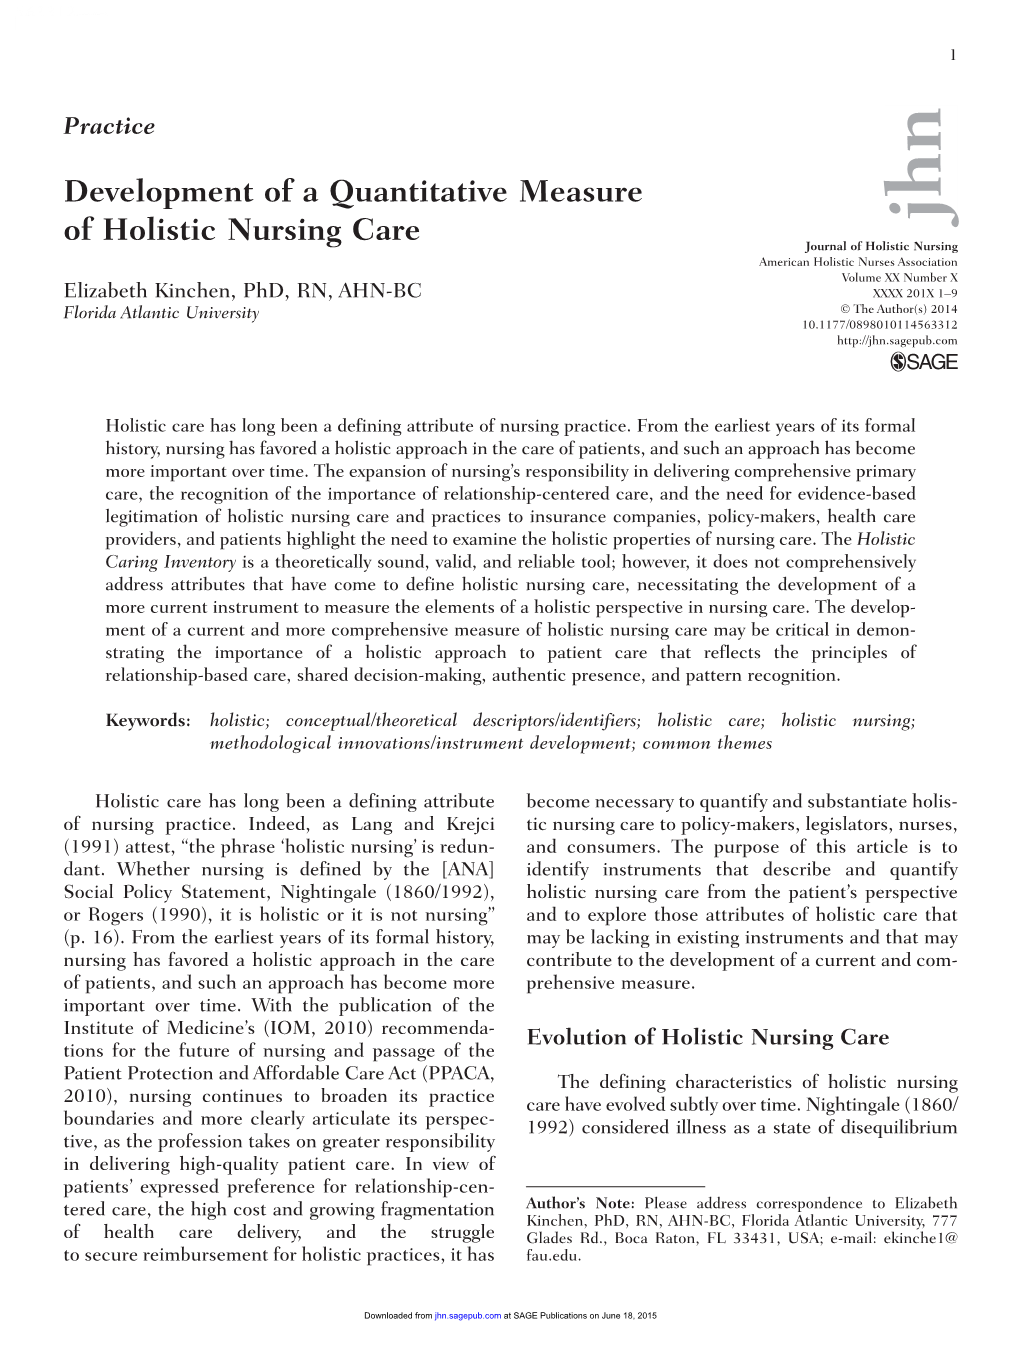 Development of a Quantitative Measure of Holistic Nursing Care